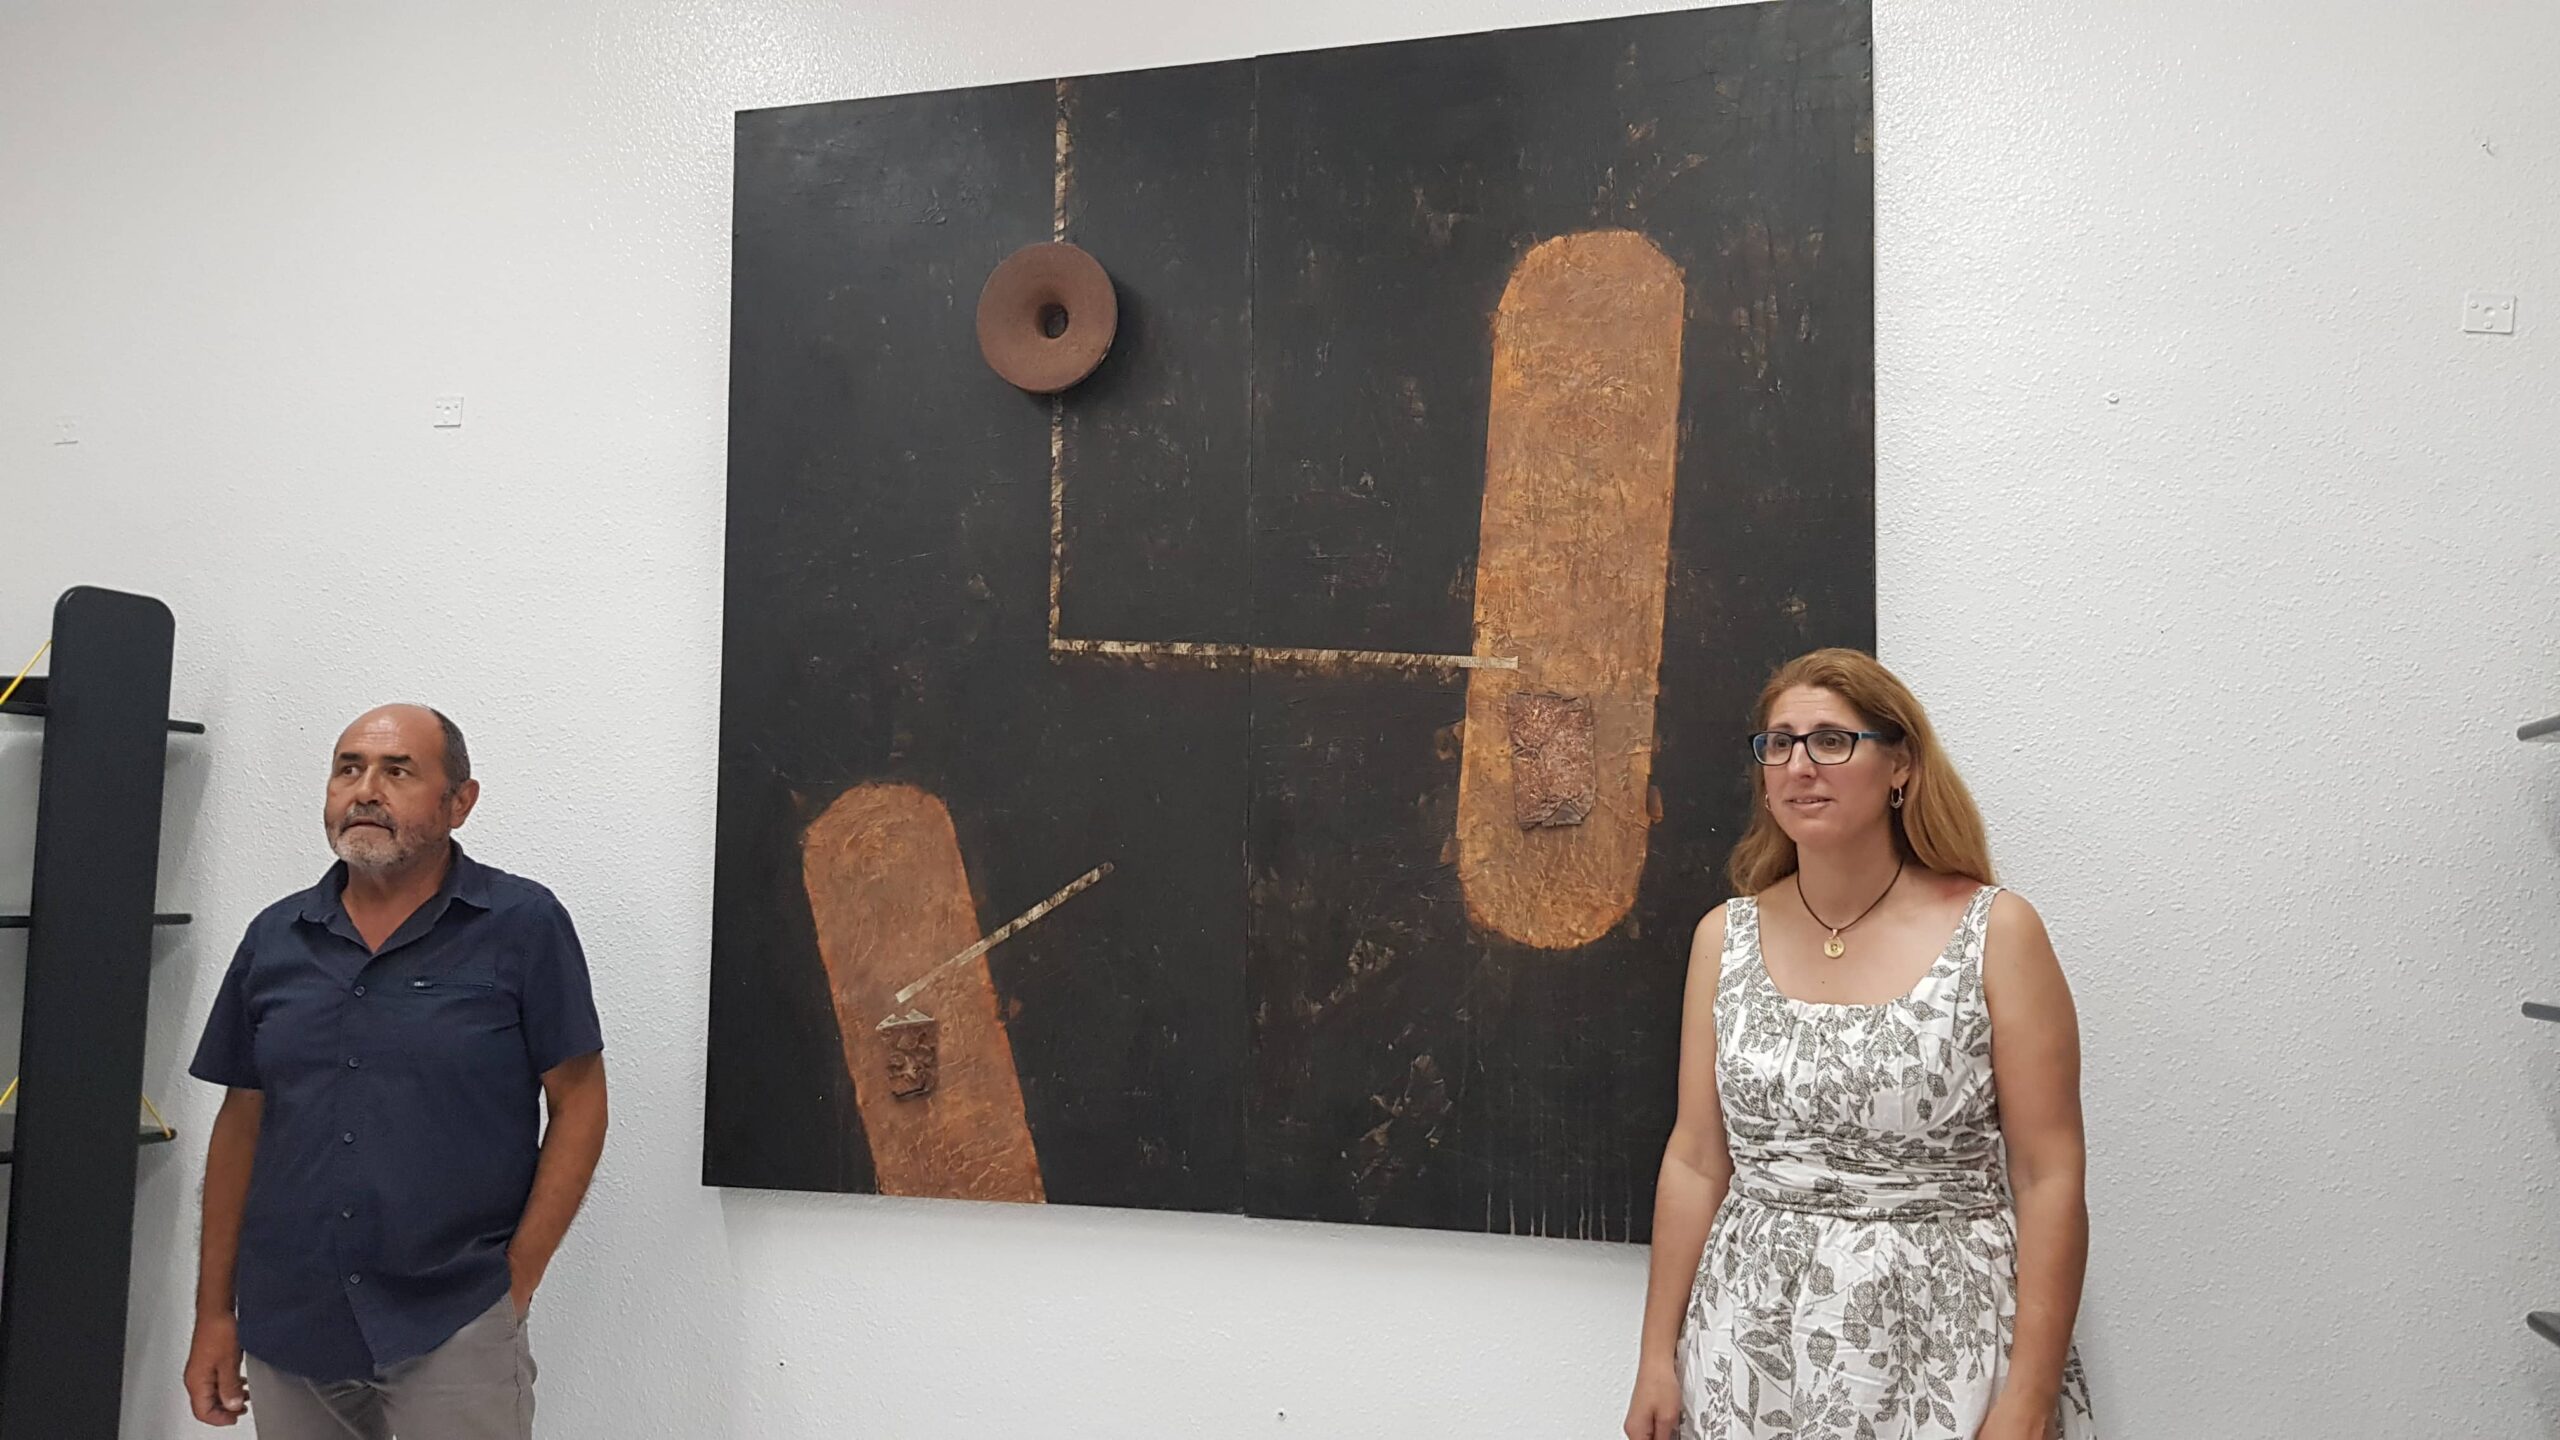 El villenense, Paco Martínez, dona un cuadro al Ayuntamiento valorado en 3.000 euros